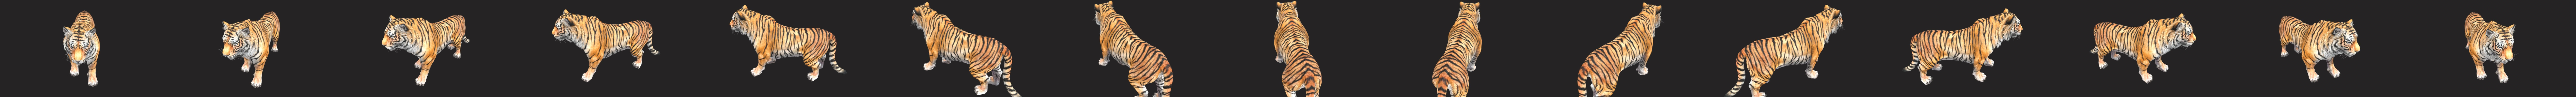 Bengal Tiger - 3D model by ultamateterex2 (@ultamateterex2) [321191a]